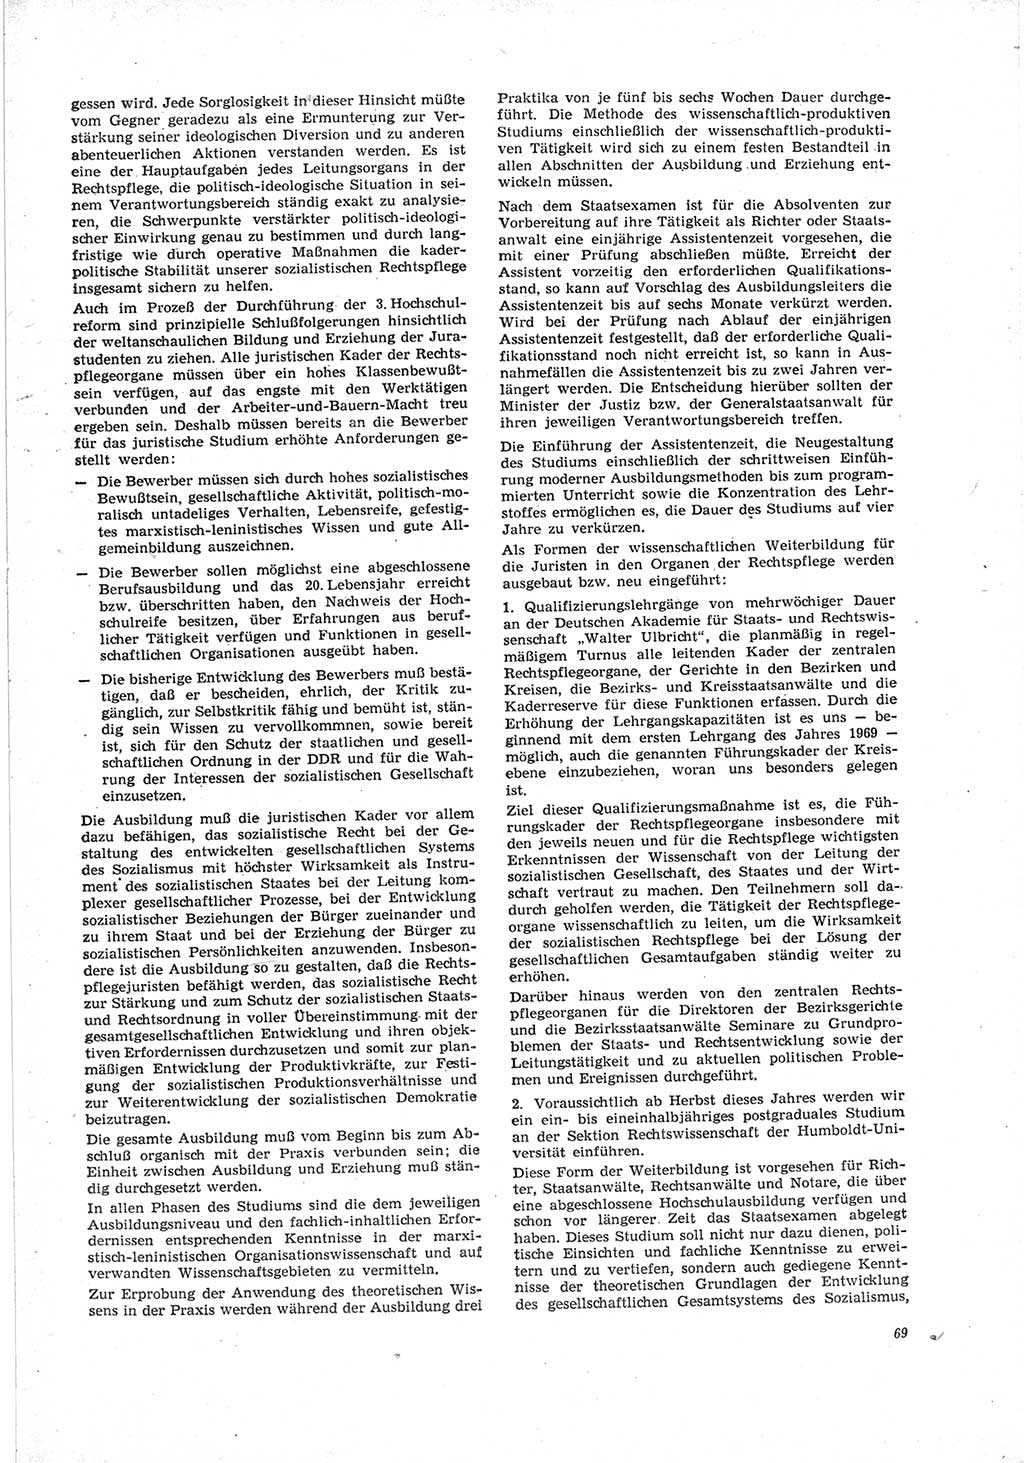 Neue Justiz (NJ), Zeitschrift für Recht und Rechtswissenschaft [Deutsche Demokratische Republik (DDR)], 23. Jahrgang 1969, Seite 69 (NJ DDR 1969, S. 69)